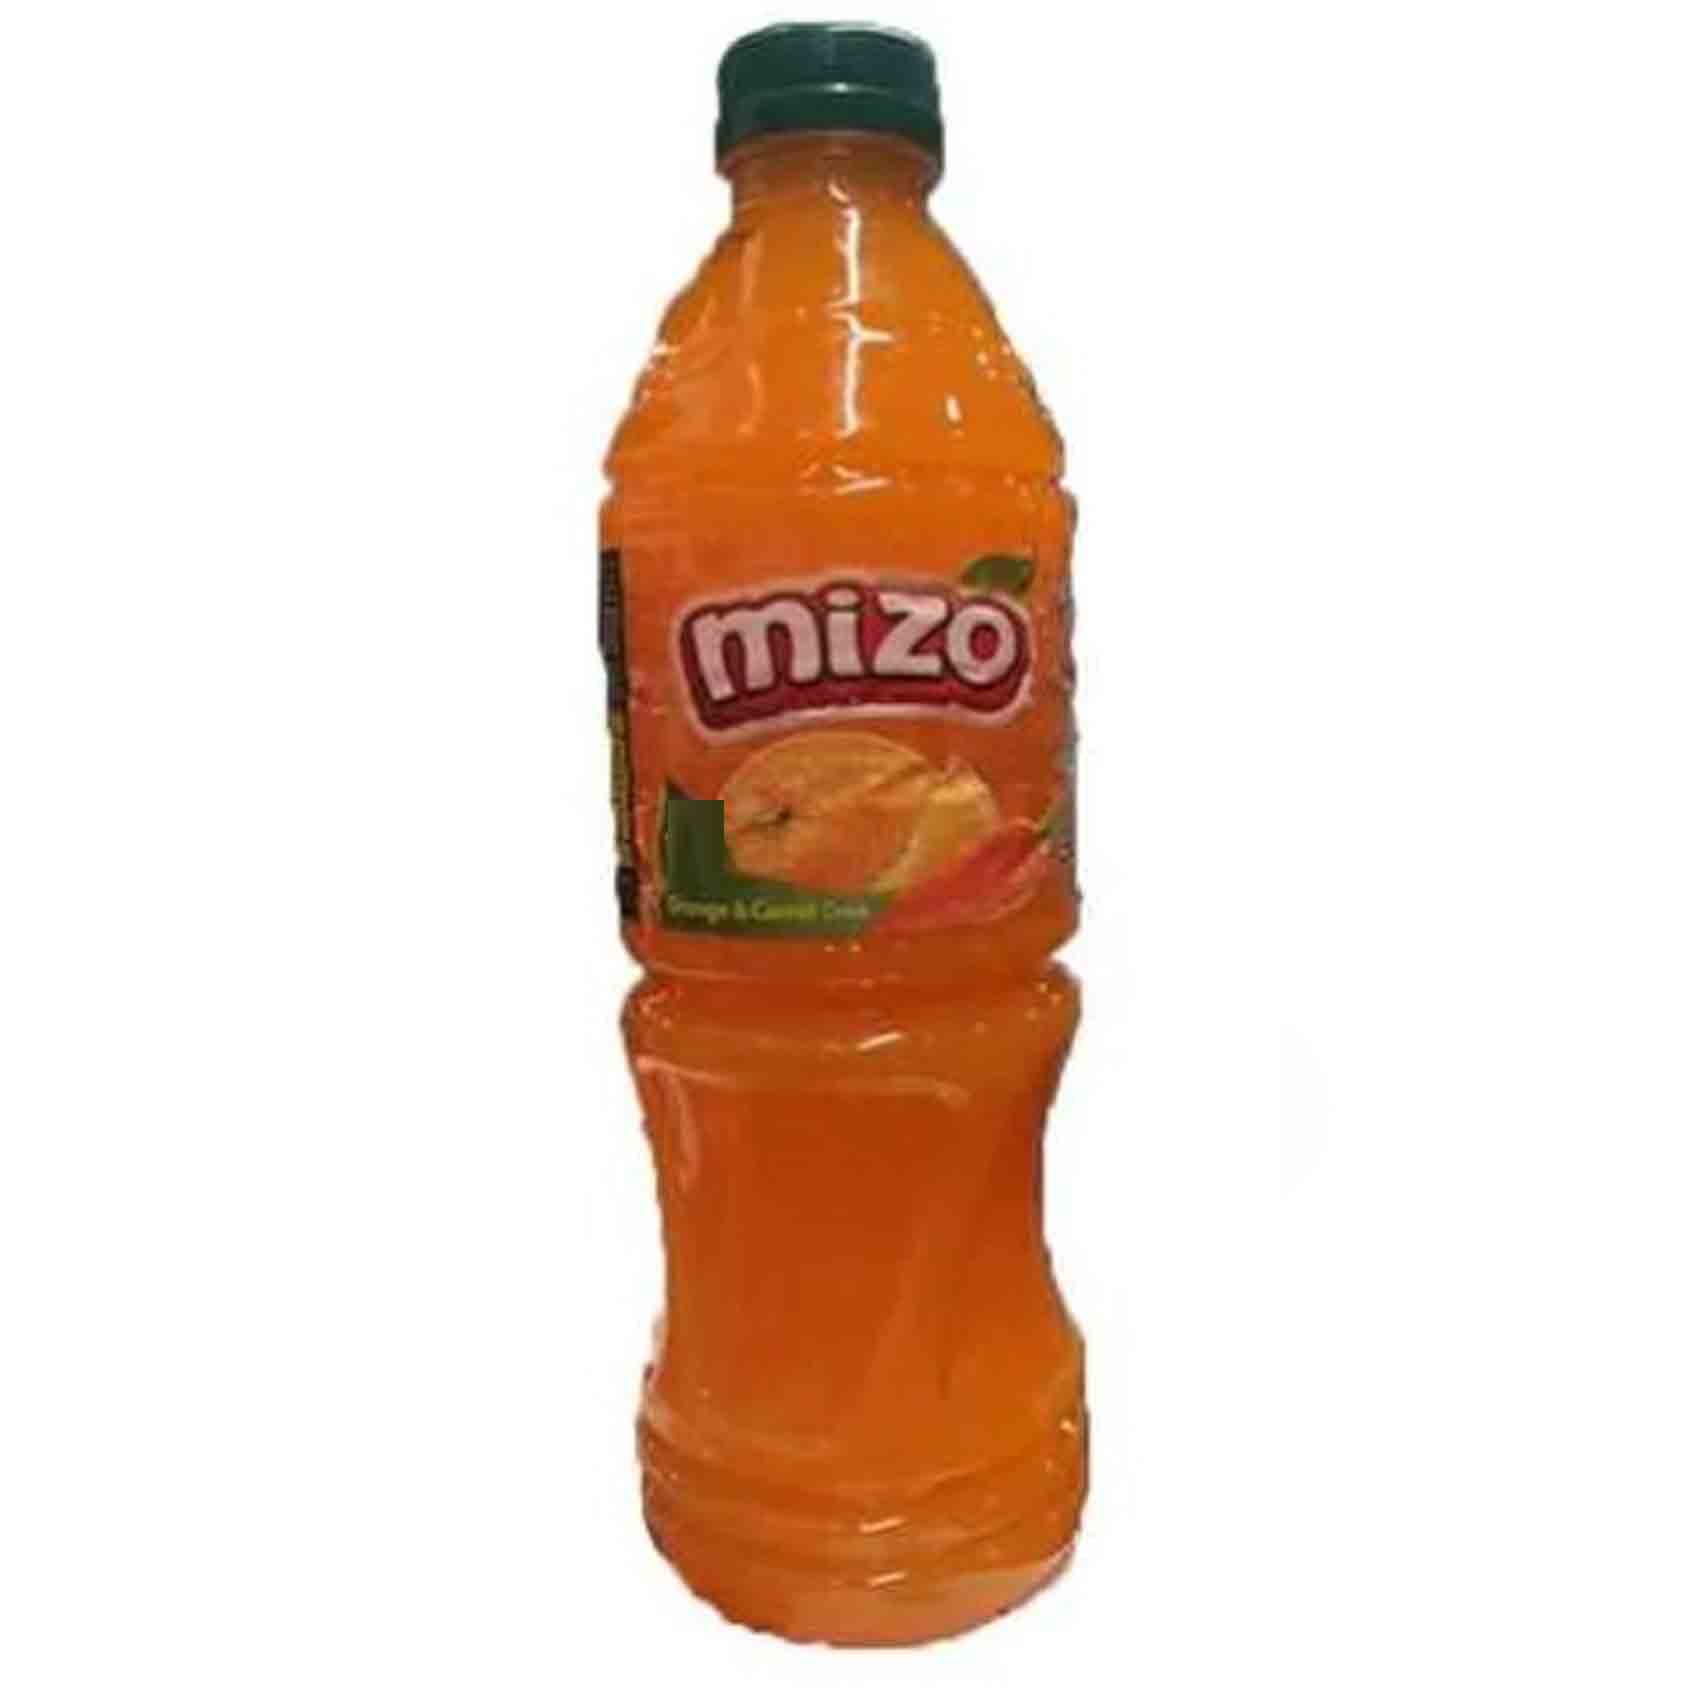 ميزو عصير بنكهة البرتقال والجرز 900 مل